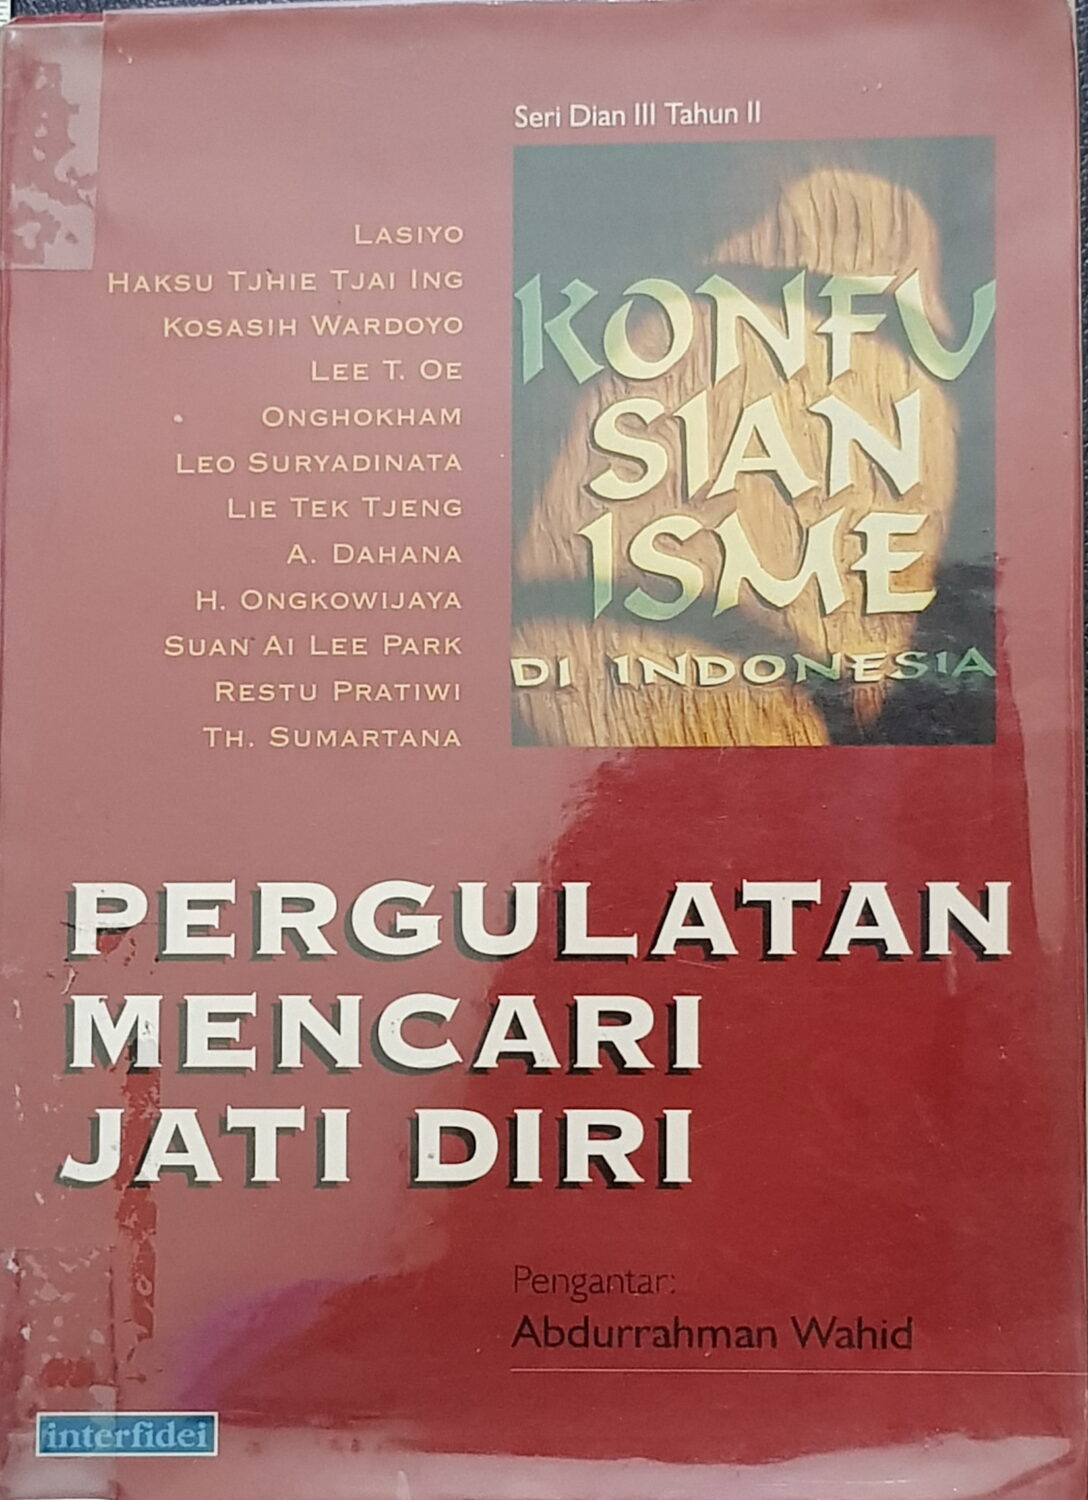 Konfusianisme di Indonesia: Pergulatan Mencari Jati Diri (Seri Dian III Tahun II)